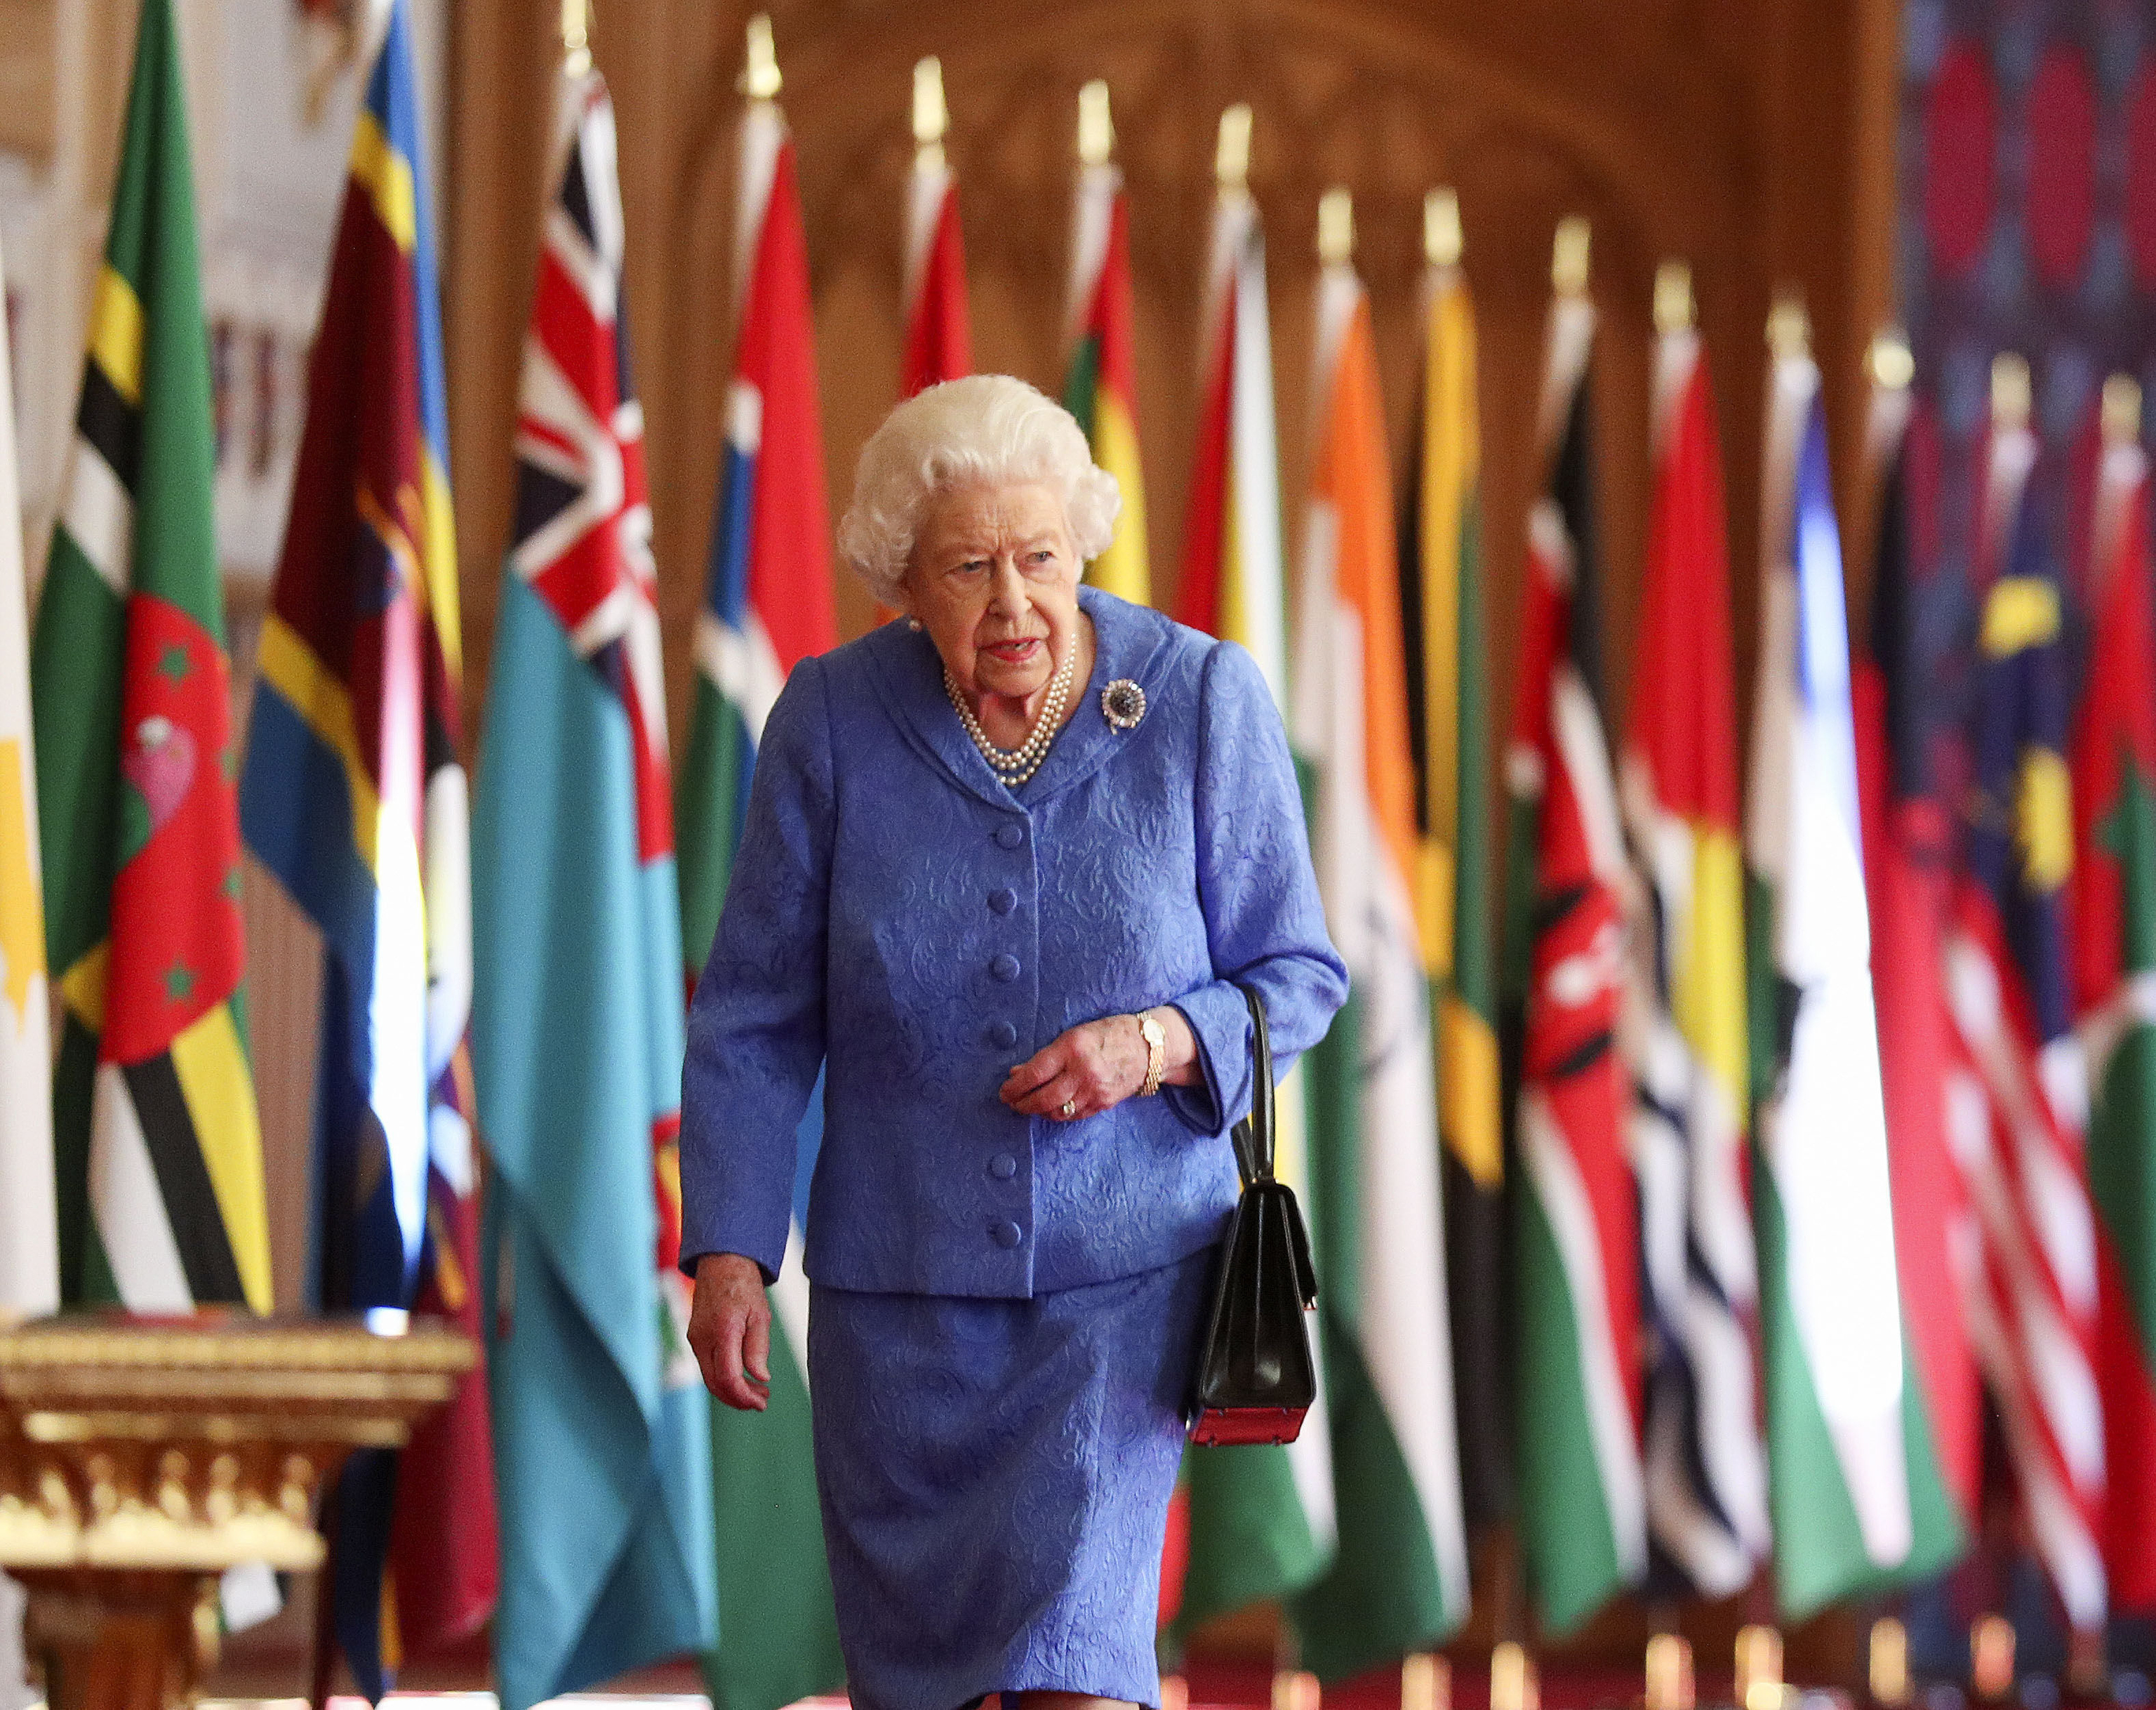 La reina Isabel II camina junto a las banderas de la Commonwealth en el Saln de San Jorge en el Castillo de Windsor, Inglaterra, para conmemorar el Da de la Commonwealth, en esta imagen que fue publicada el sbado 6 de marzo de 2021.